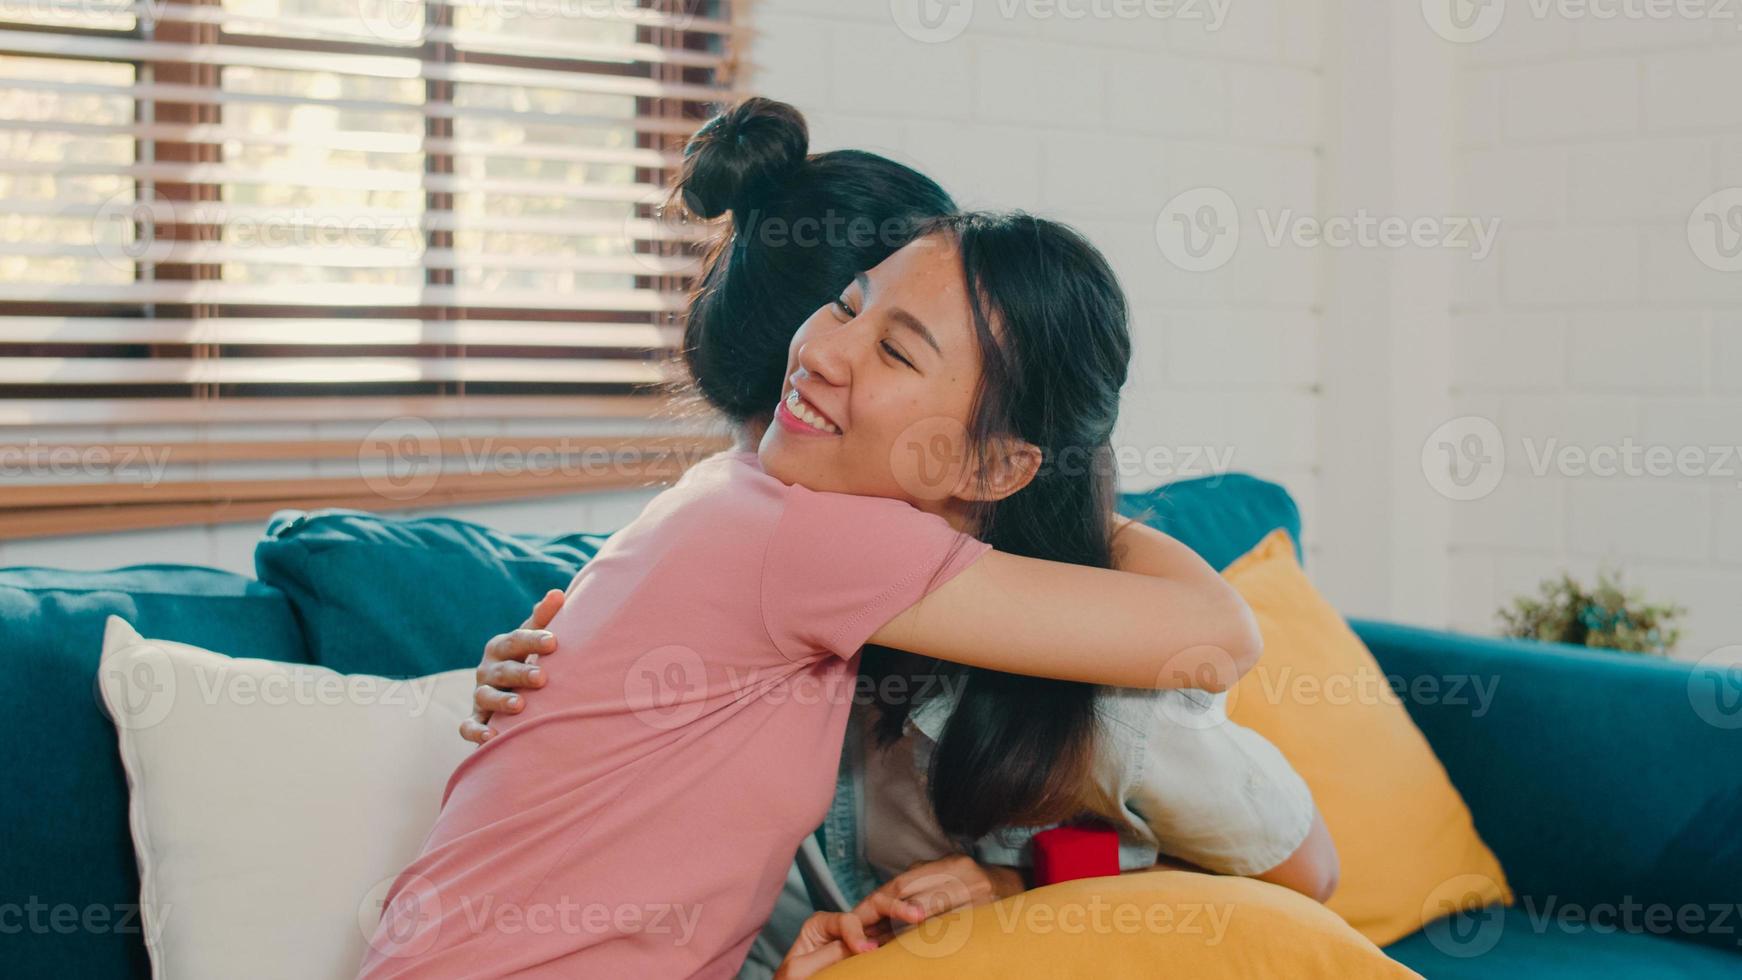 la pareja de mujeres lesbianas lgbtq asiáticas propone en casa, la joven amante de asia mujer feliz sonriendo tiene un momento romántico mientras propone y el matrimonio sorpresa usa el anillo de bodas en la sala de estar en el concepto de casa. foto